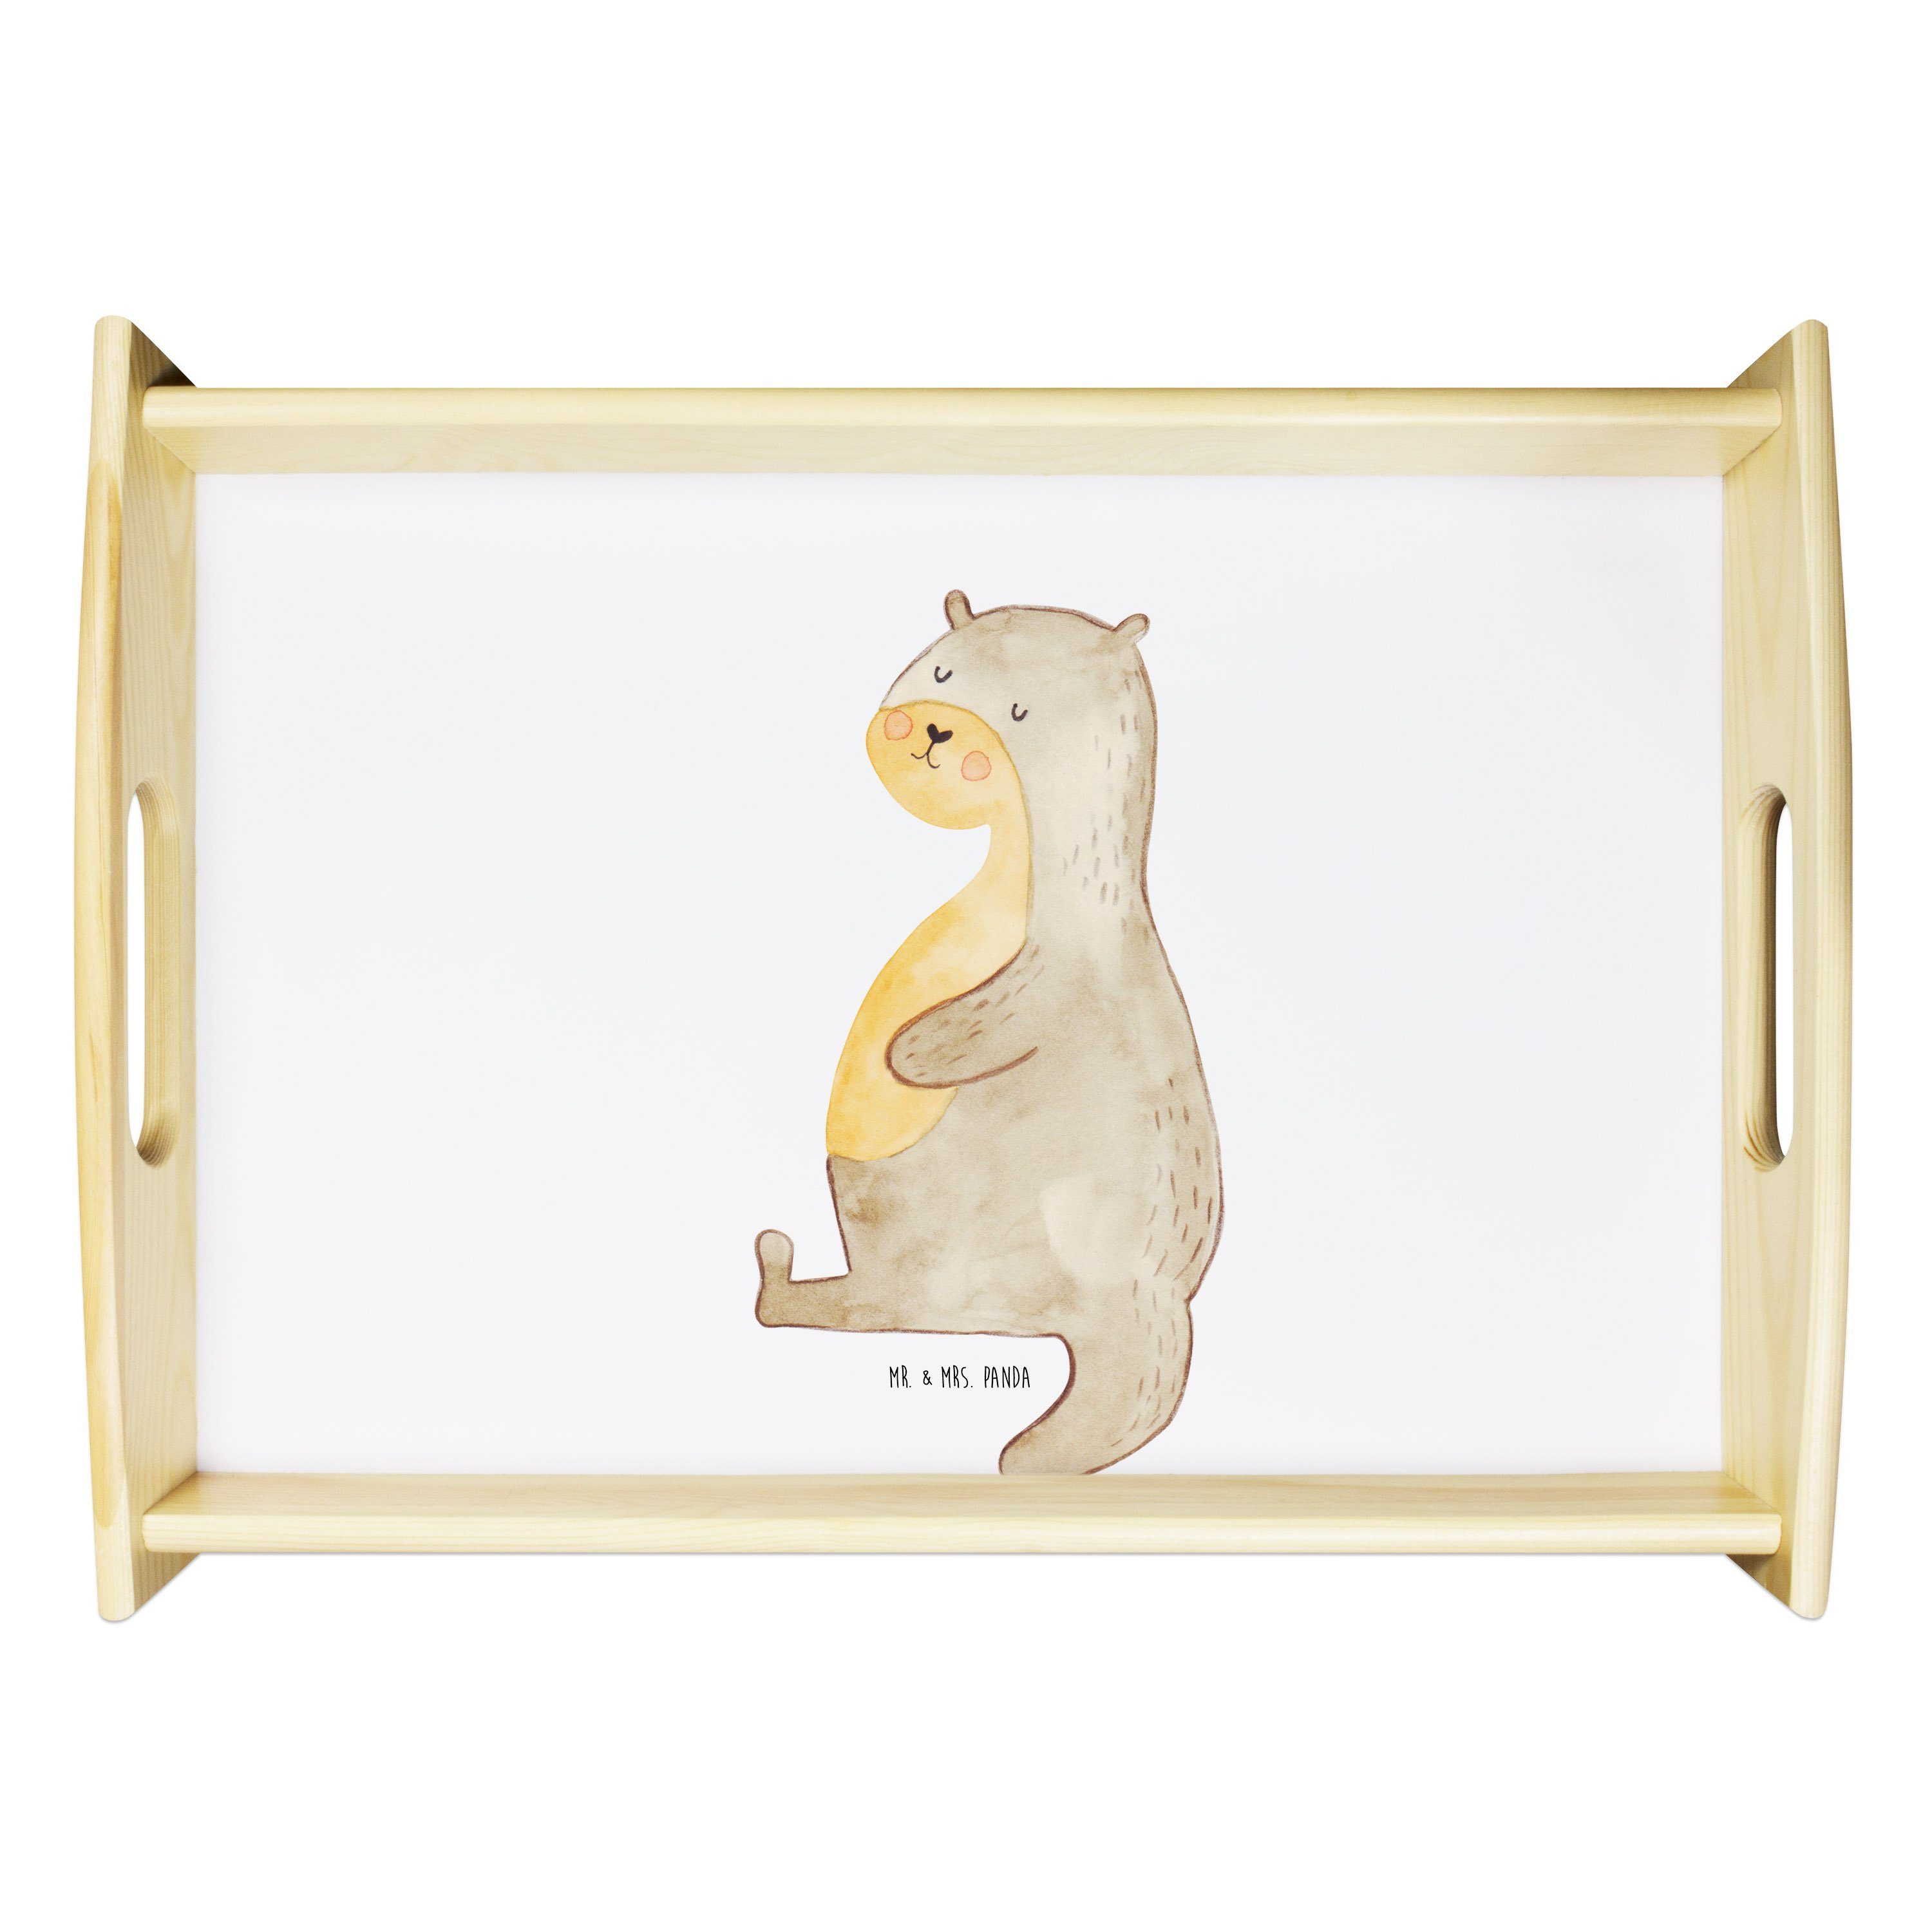 Mr. & Mrs. Panda Tablett Otter Bauch - Weiß - Geschenk, voll gefuttert, Essen. foodlover, Fisc, Echtholz lasiert, (1-tlg)